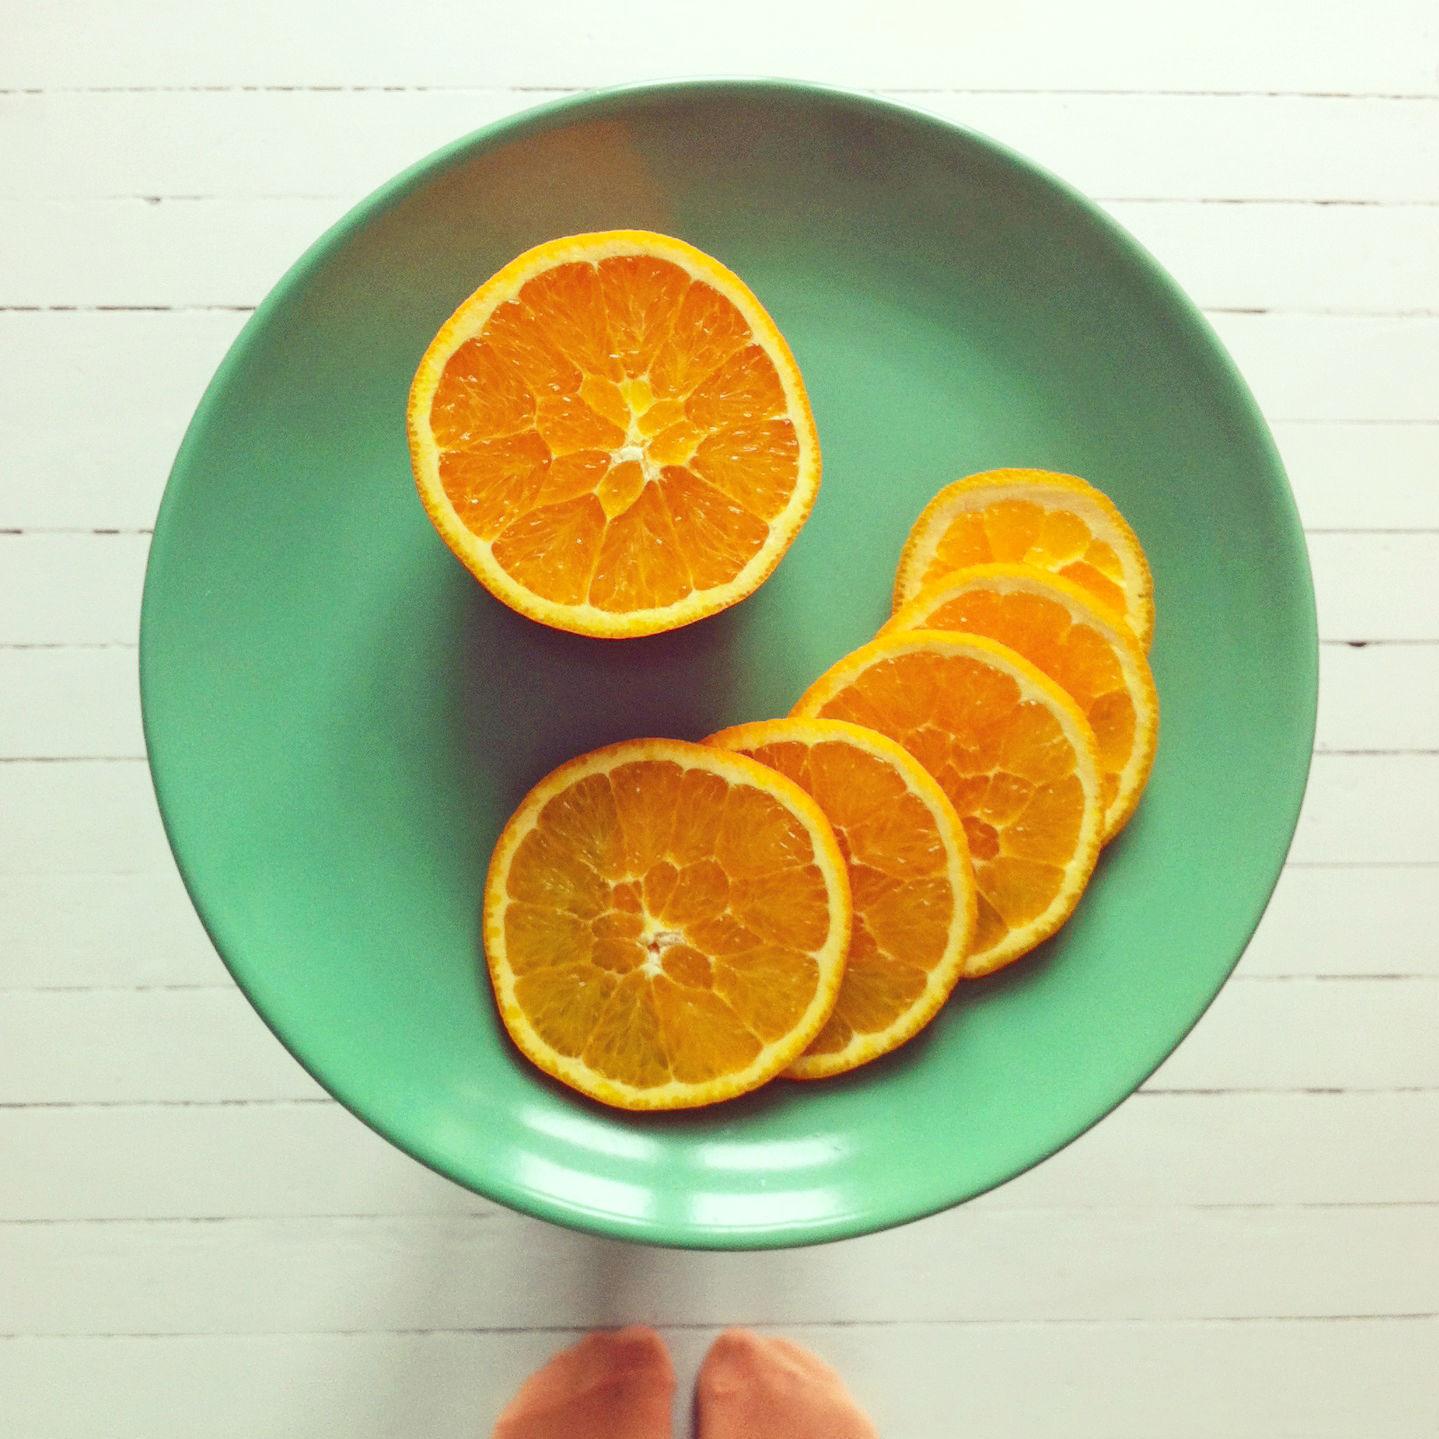 Kutt en appelsin i tynne skiver.